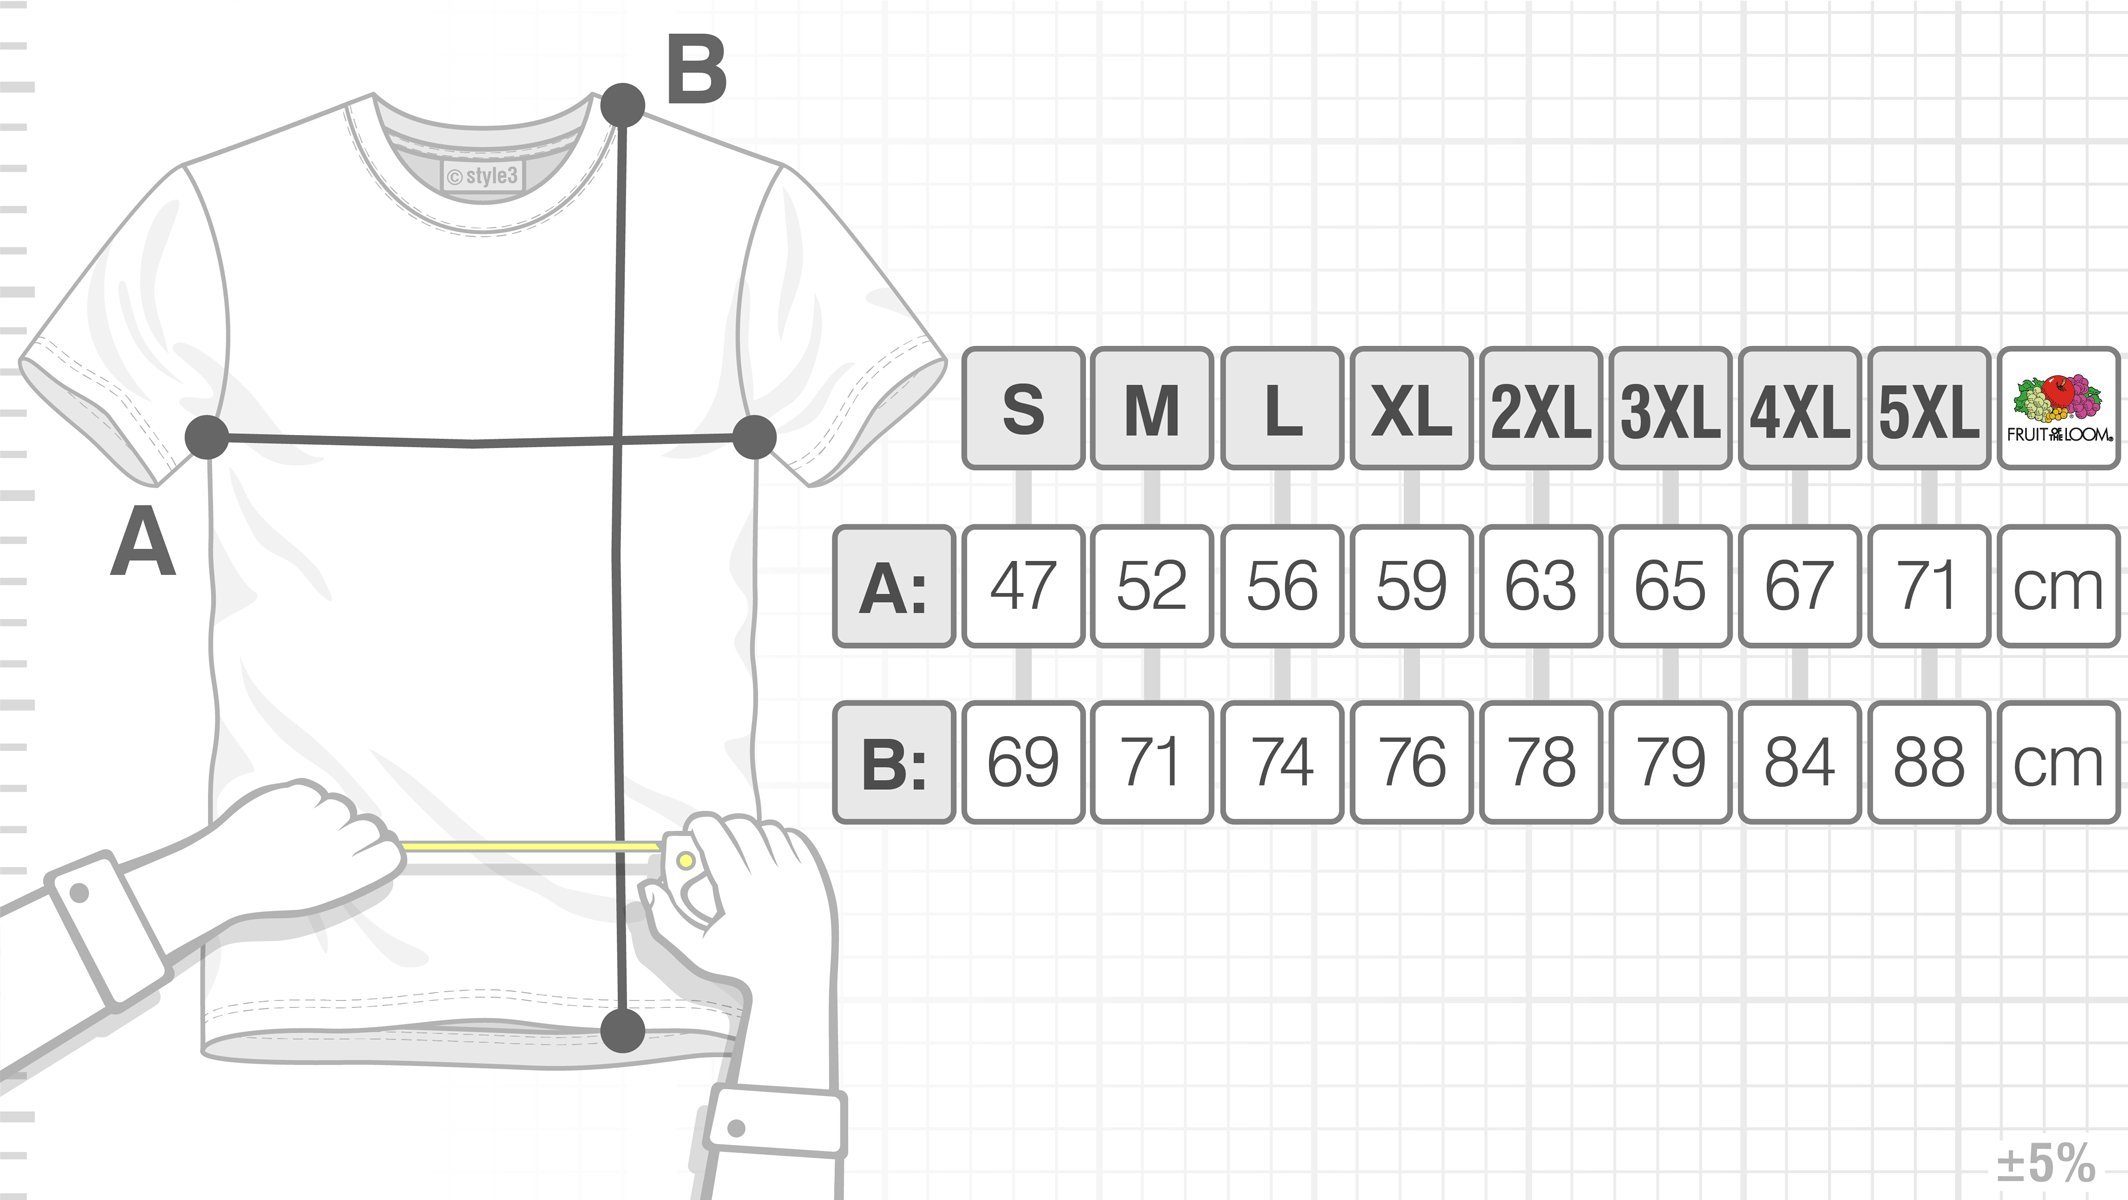 grau Big Bang Herren Cooper Algorithm T-Shirt meliert Friendship Print-Shirt style3 Freundschaft Formel Sheldon Theory